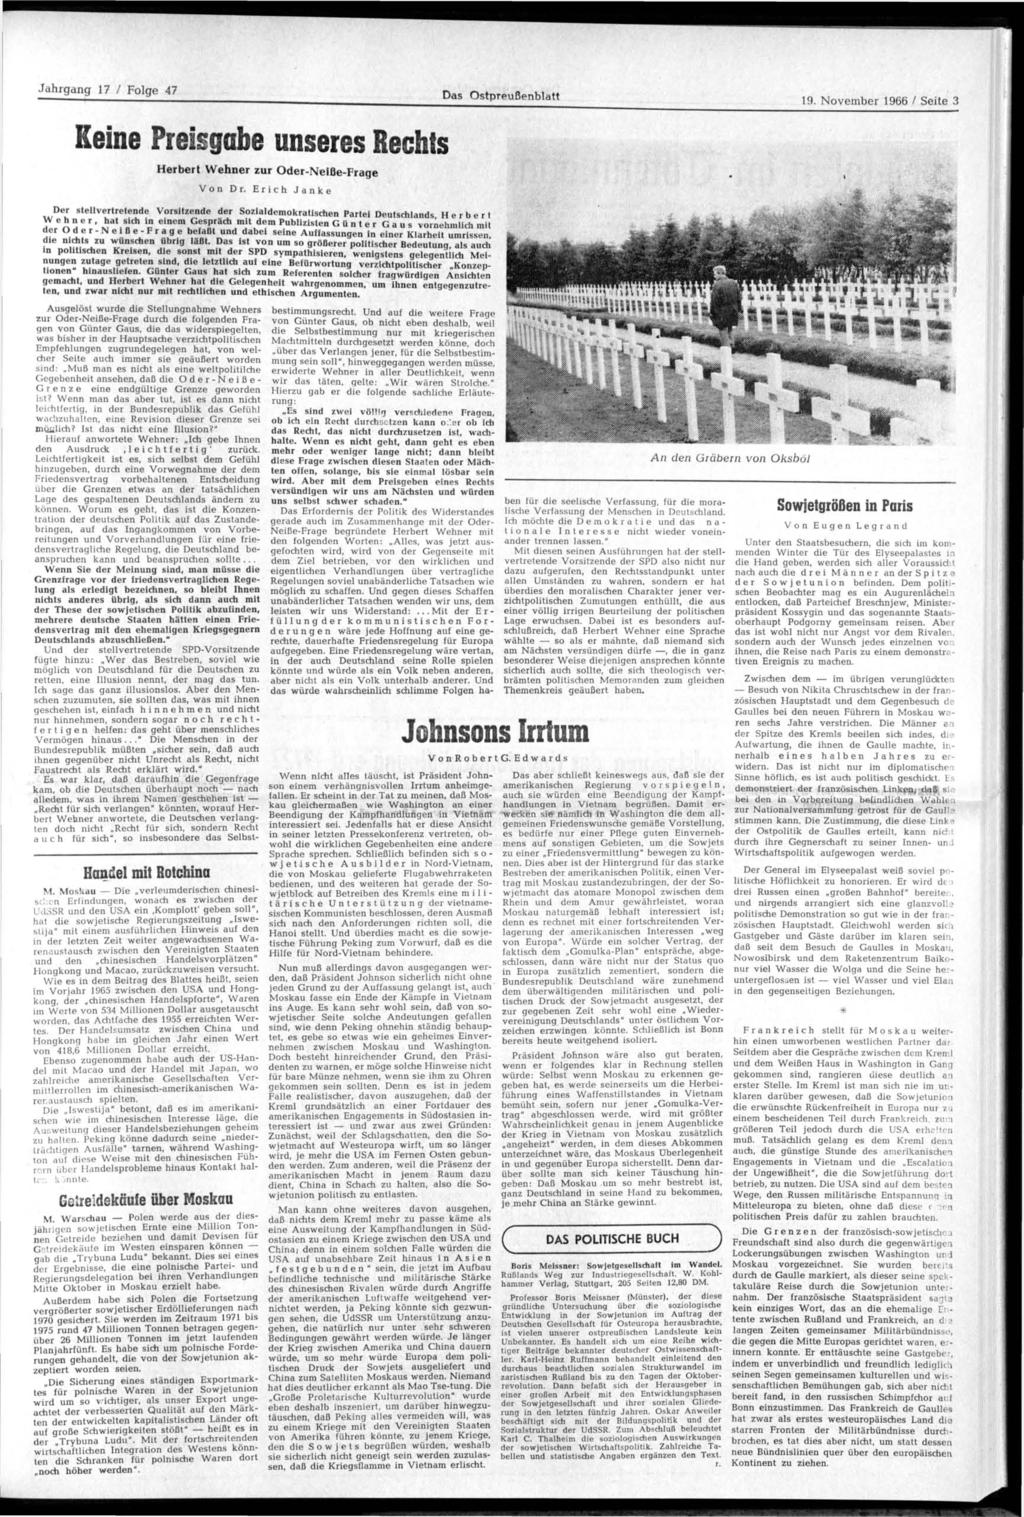 Das Ostpreußenblatt 19. November 1966 / Seite 3 Keine Preisgabe unseres Rechts Herbert Wehner zur Oder-Neiße-Frage Von Dr.